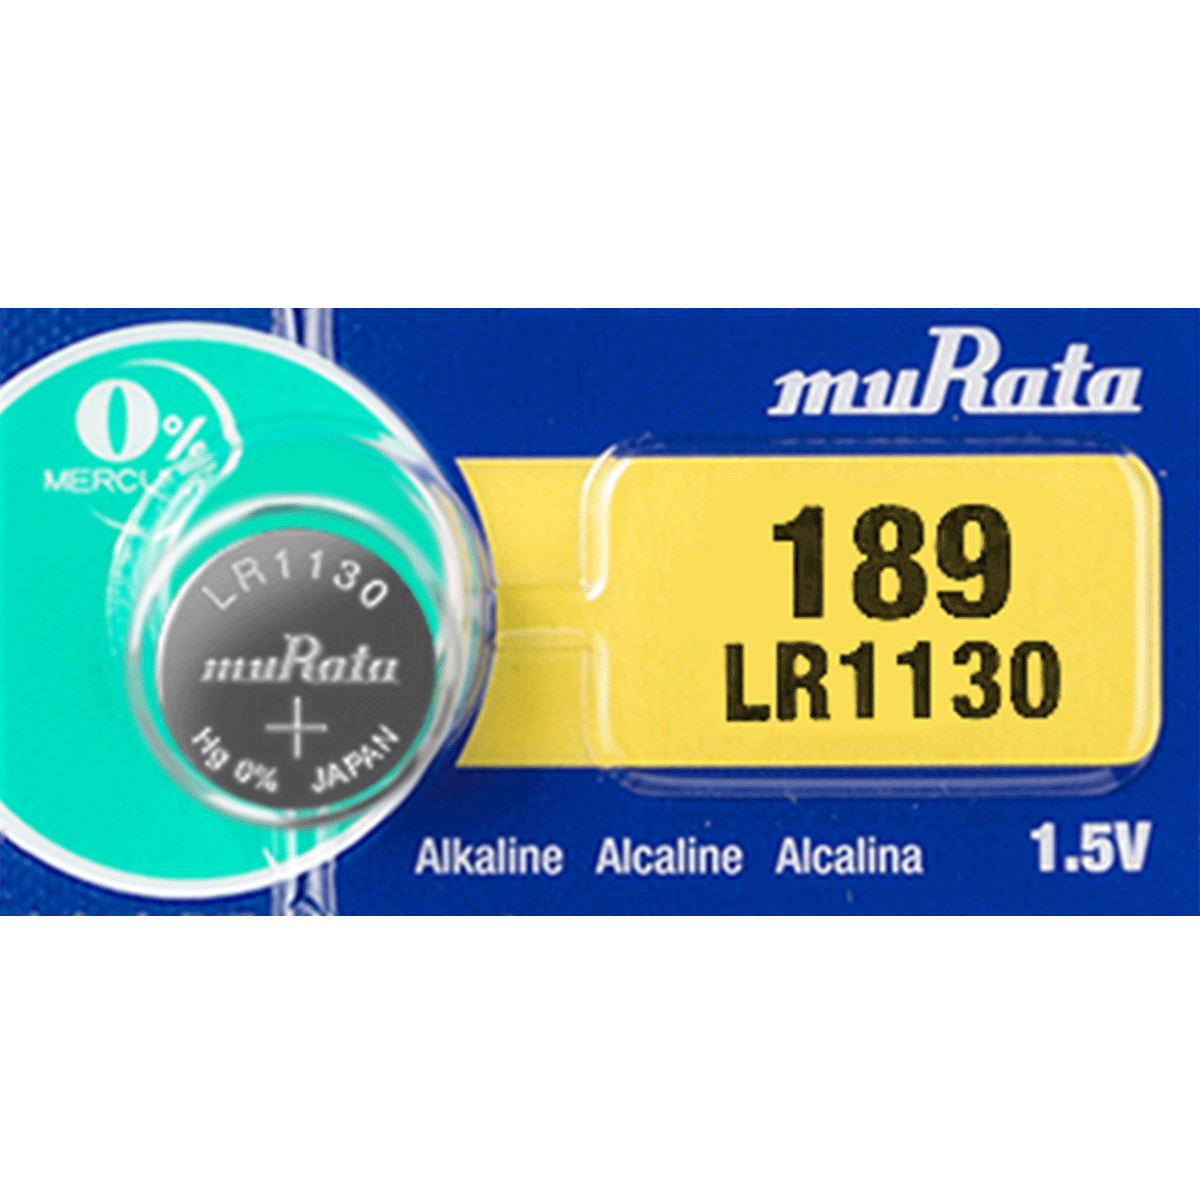 Button Cell Maxell 1.5 Volt Alkaline Battery (LR41) 2 Pack